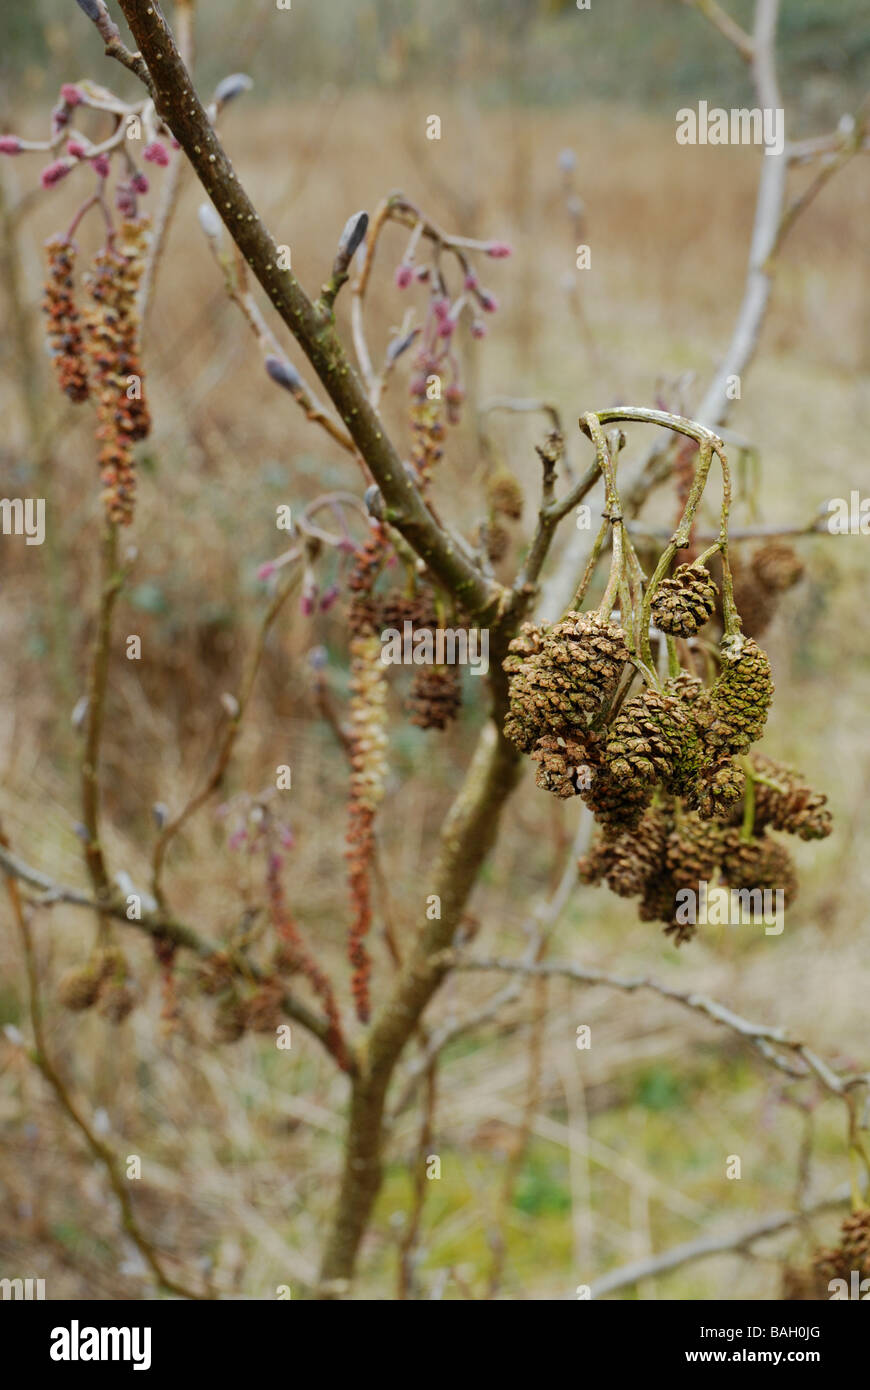 Chatons, Cones et fleurs femelles de l'Alnus glutinosa Alder Tree, Pays de Galles, Royaume-Uni. Banque D'Images